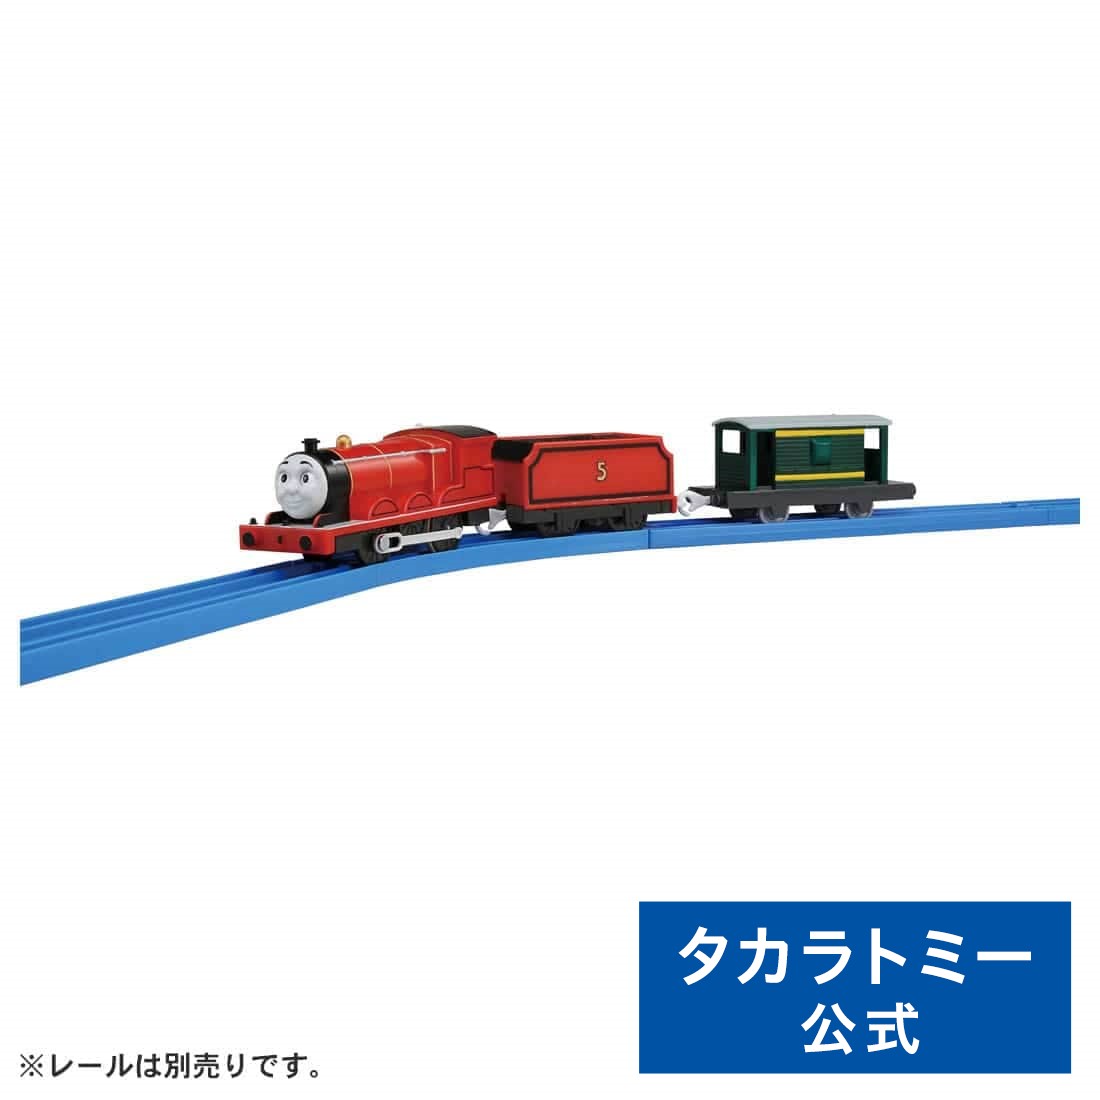 プラレール TS-05プラレールジェームス | タカラトミー 電車 新幹線 列車 乗り物 おもちゃ こども 子供 ギフト プレゼント